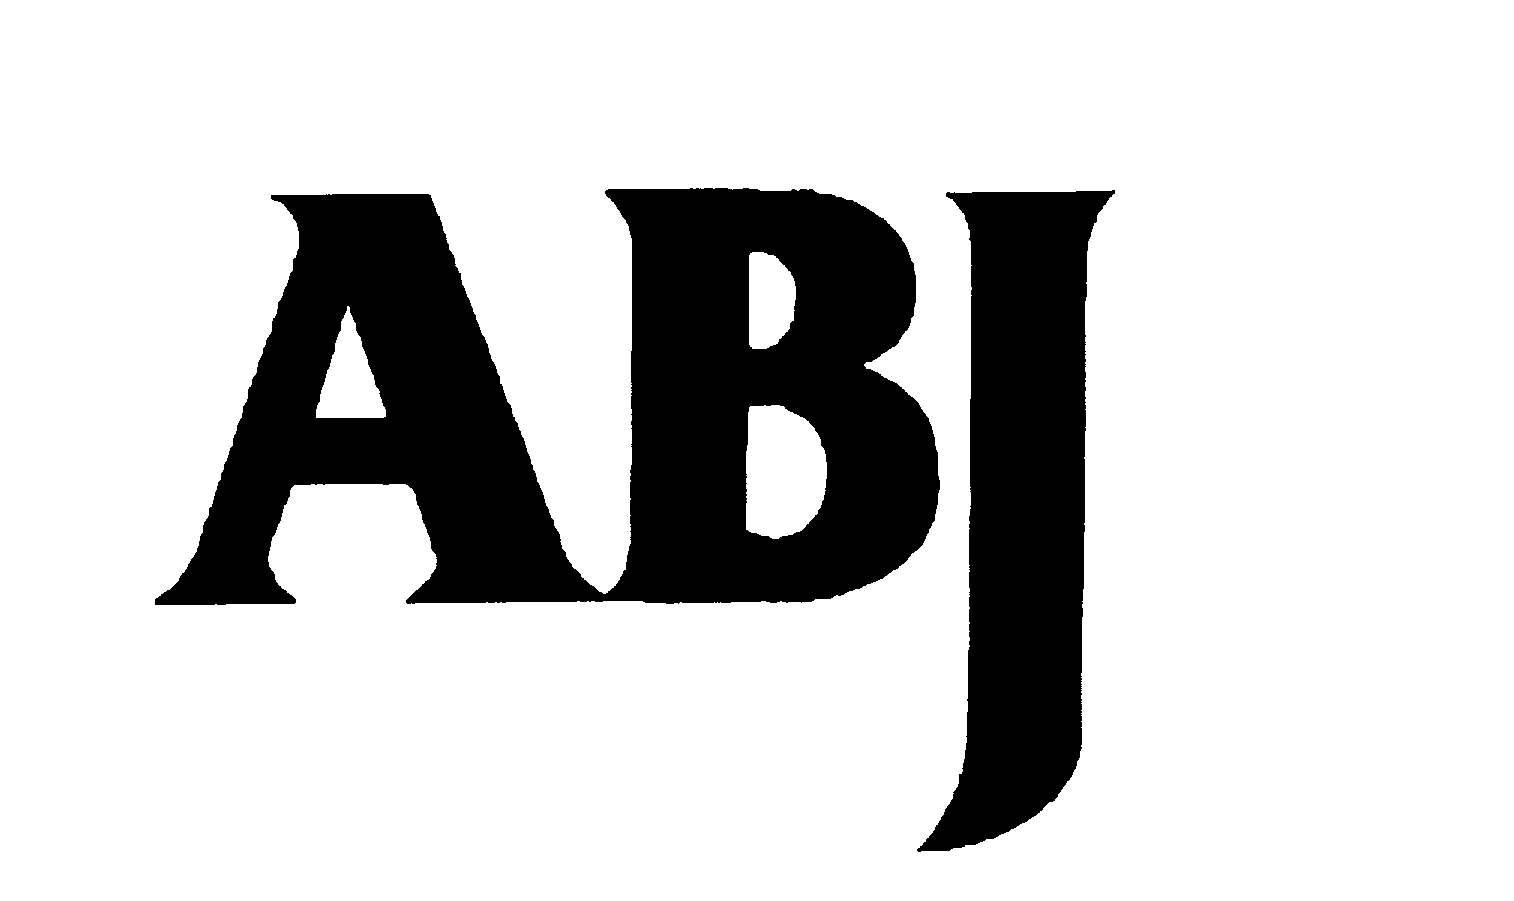 Trademark Logo ABJ